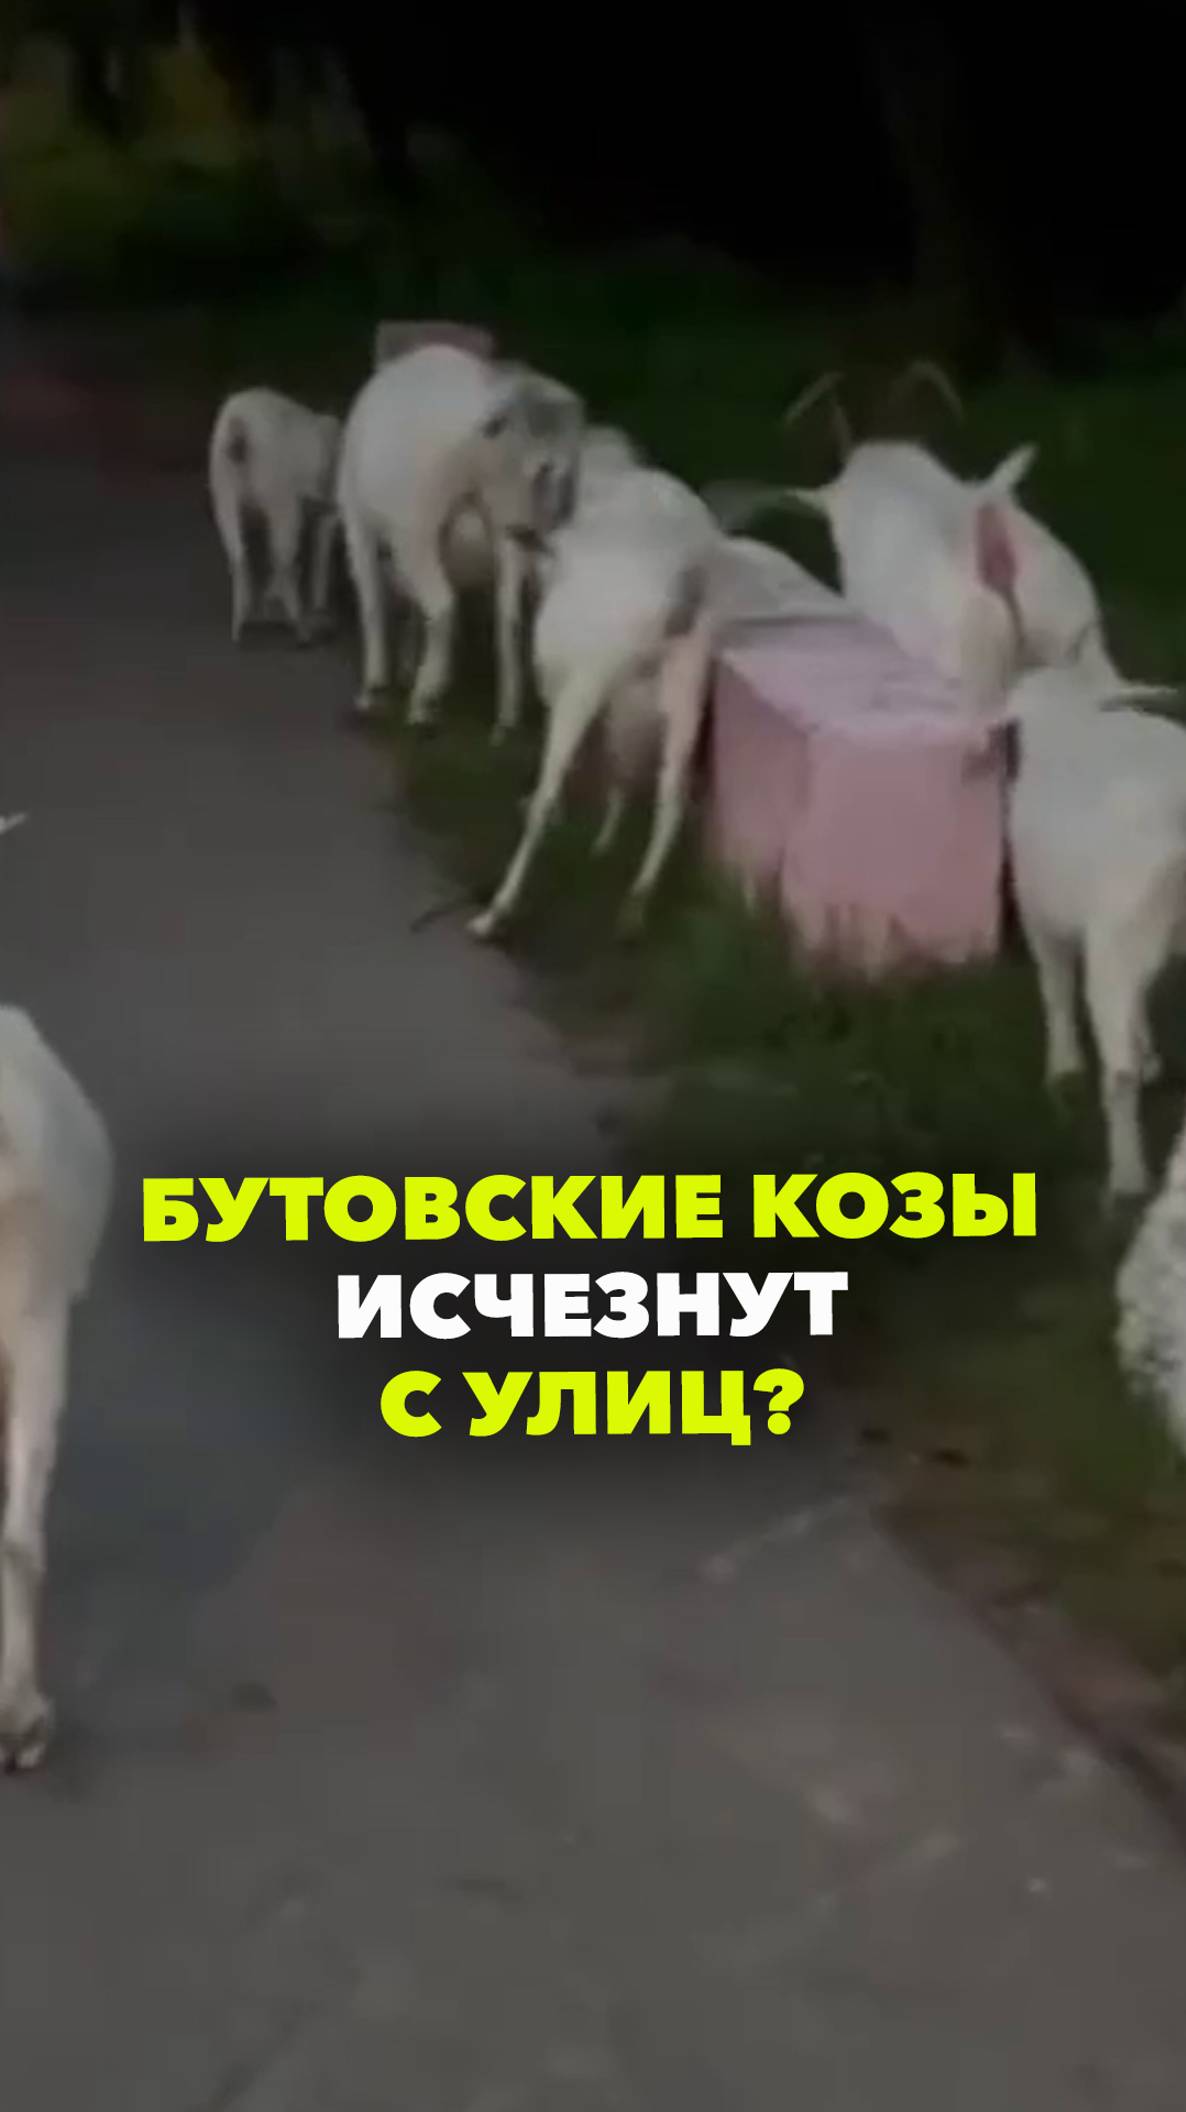 Бутовские козы идут в тюрьму: жители недовольны, что рогатые какают и пляшут на крышах авто